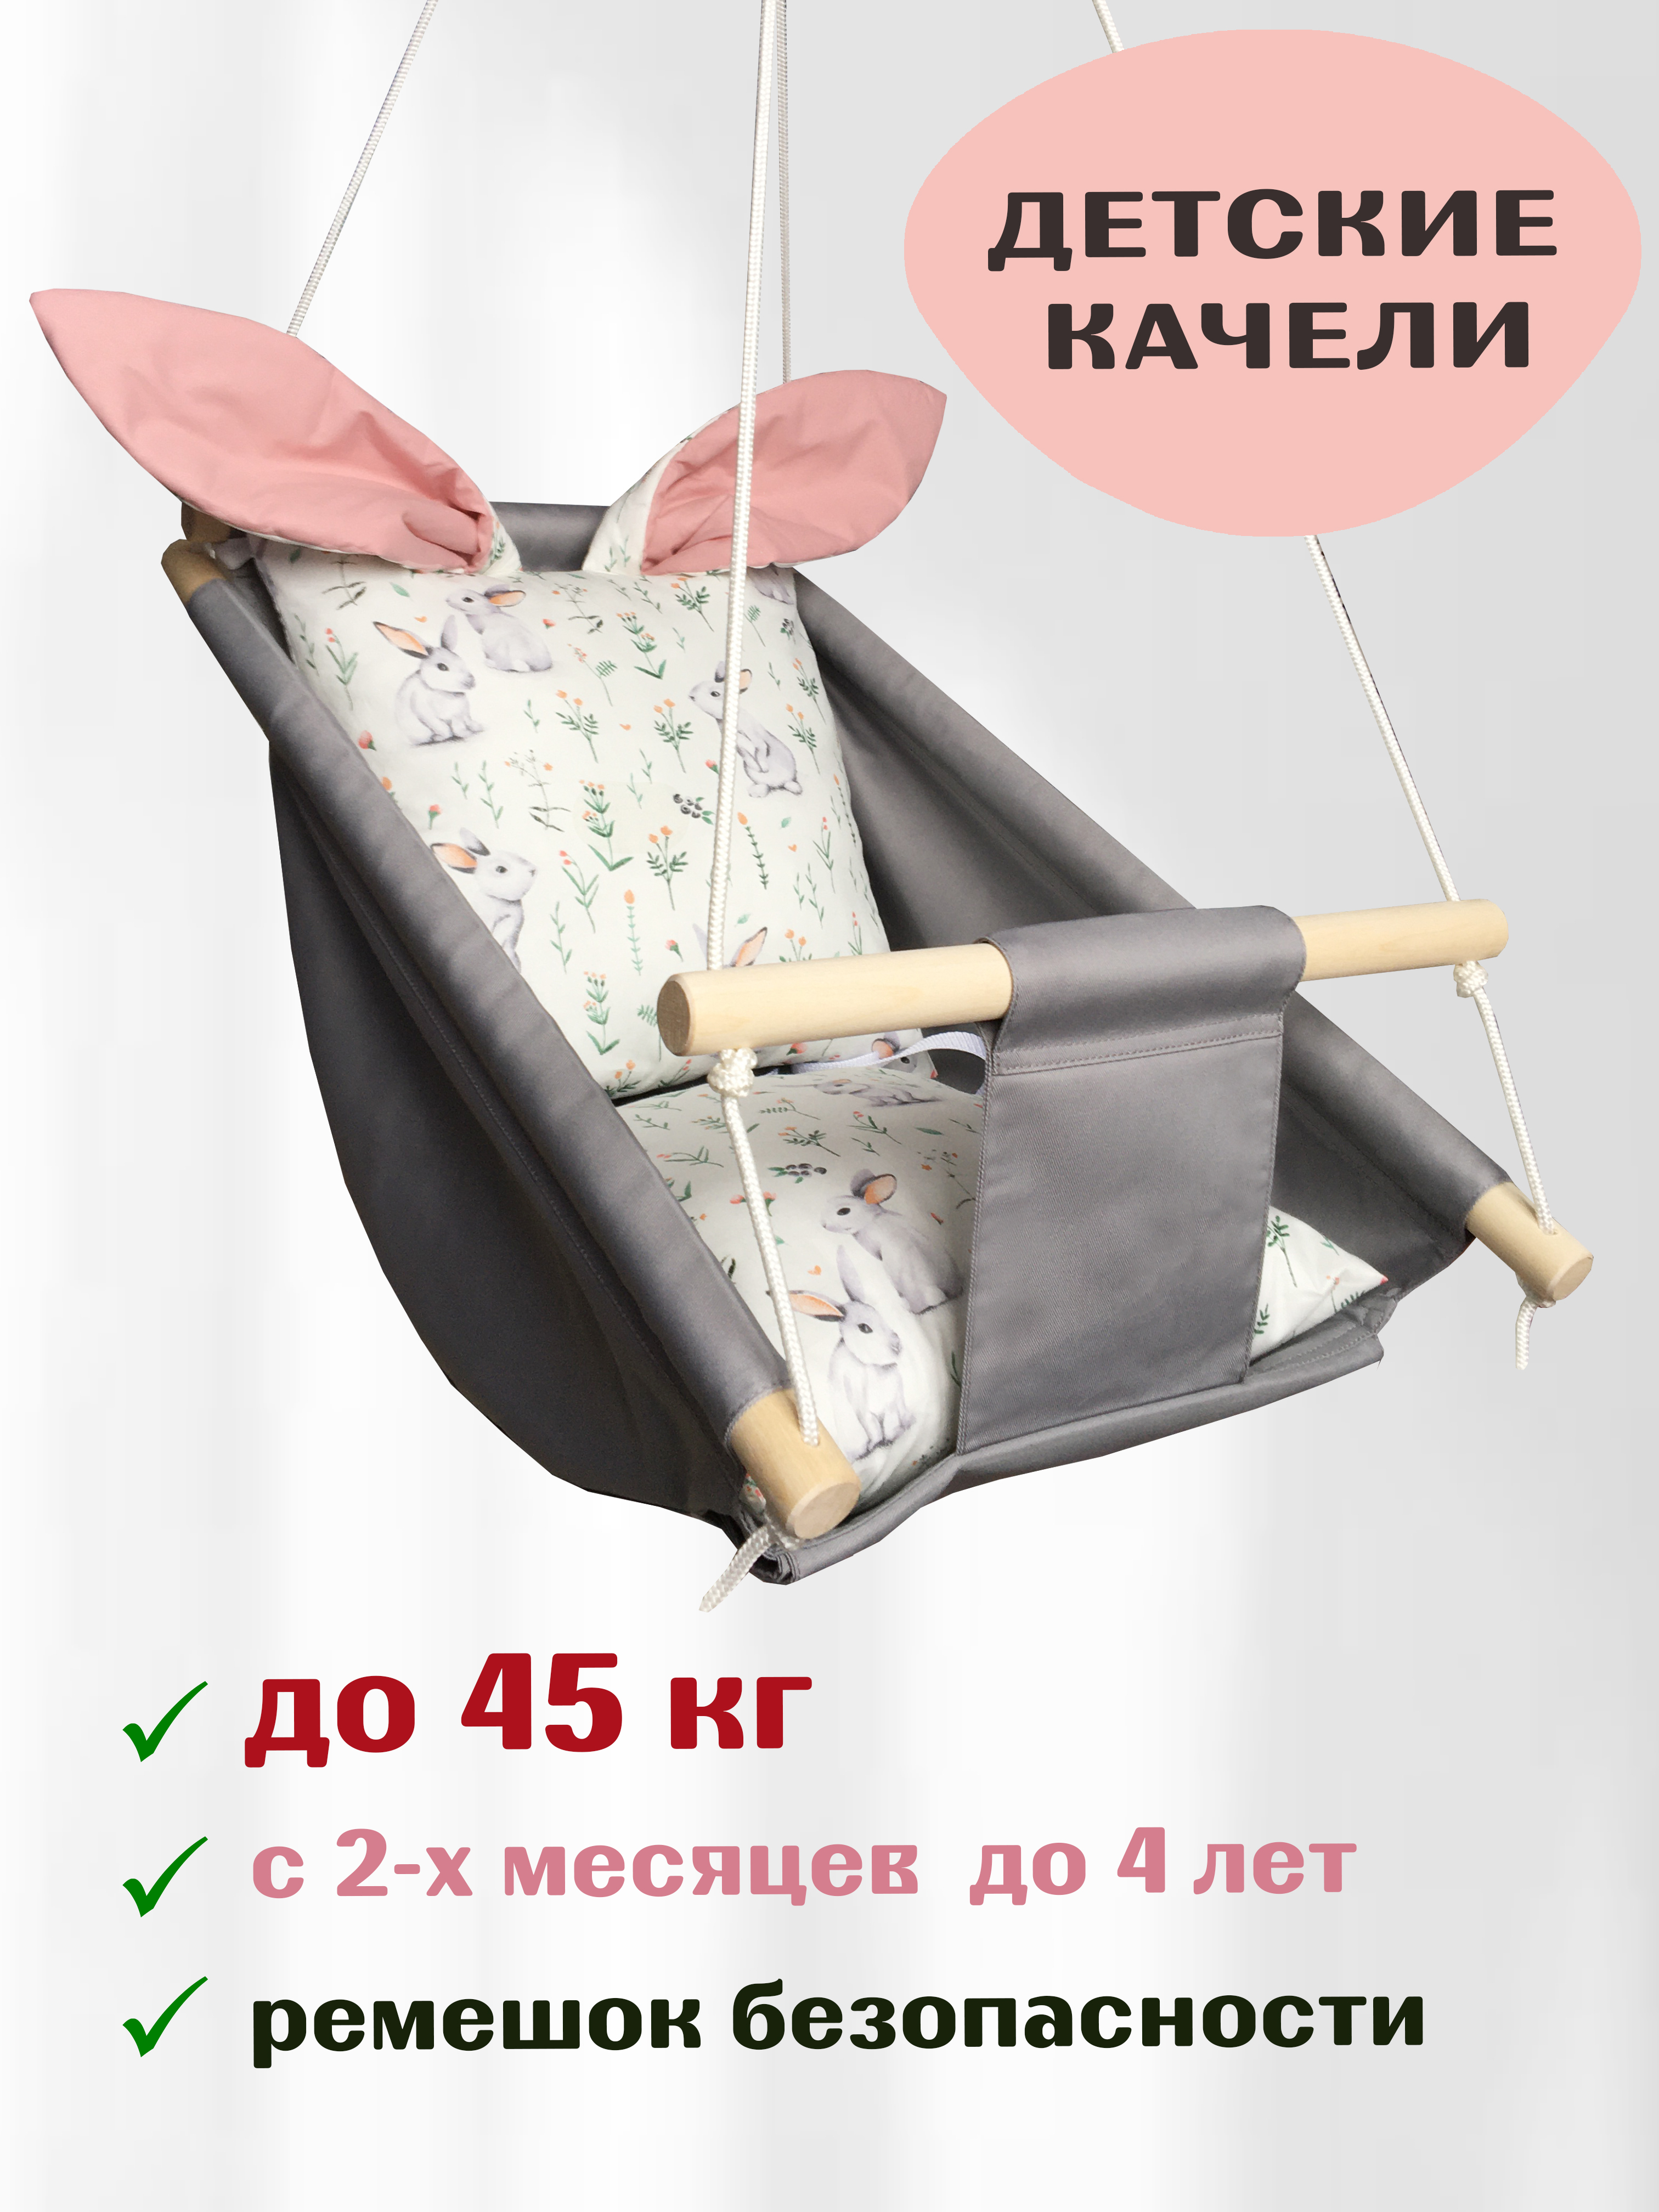 Качалки  Качалка Любимый мишка для детей в возрасте от 6 месяцев до 3 лет с ремнями безопасности